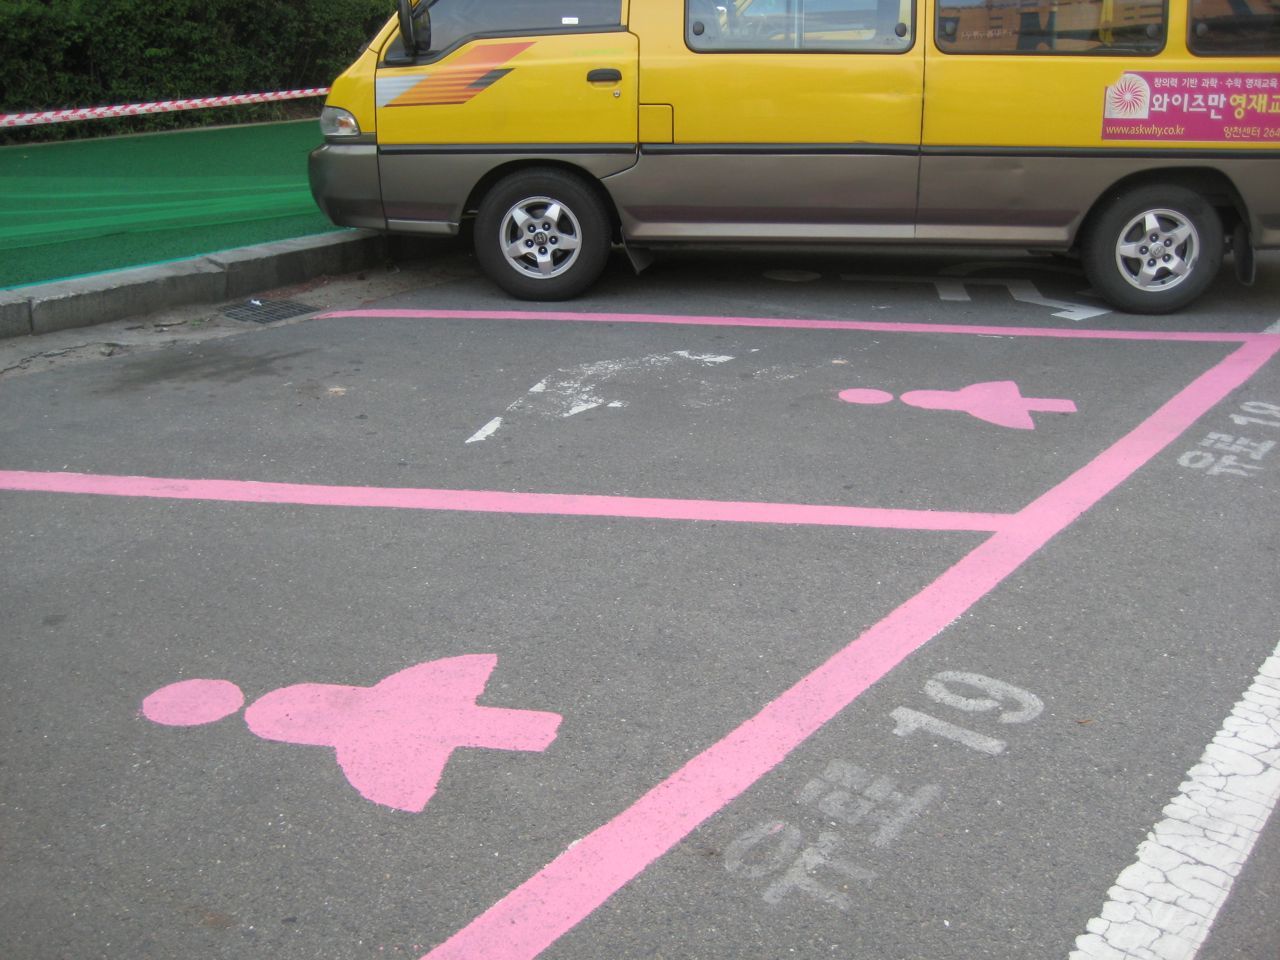 “Φαλλοκρατικές” θέσεις πάρκινγκ μόνο για γυναίκες στη Σεούλ